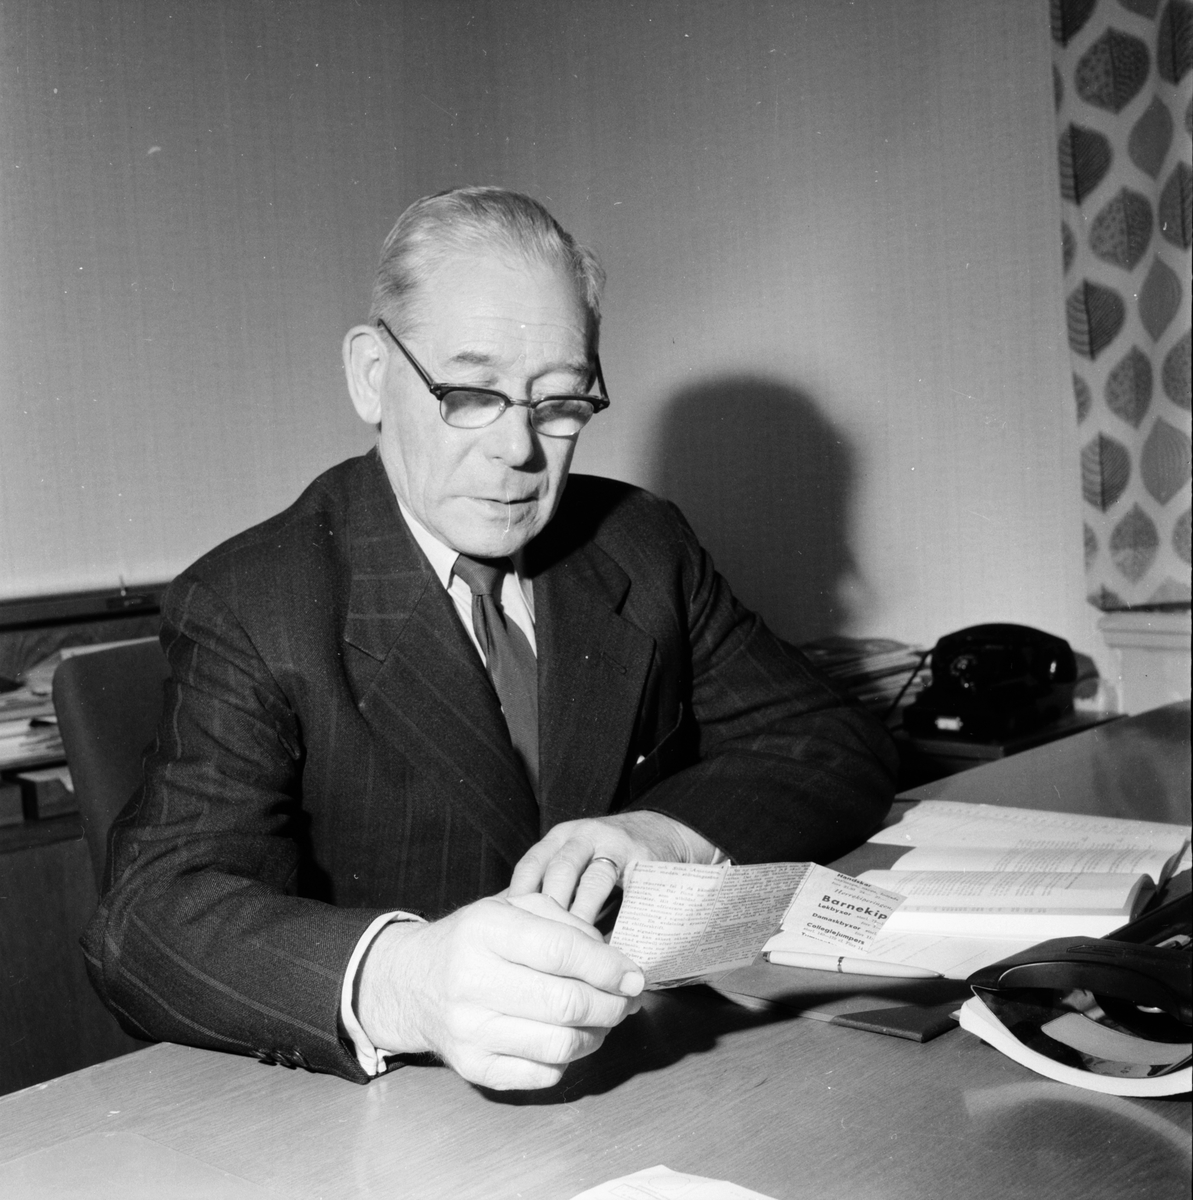 Albert Sjöberg barnavårdsassistent.
20/1 1961